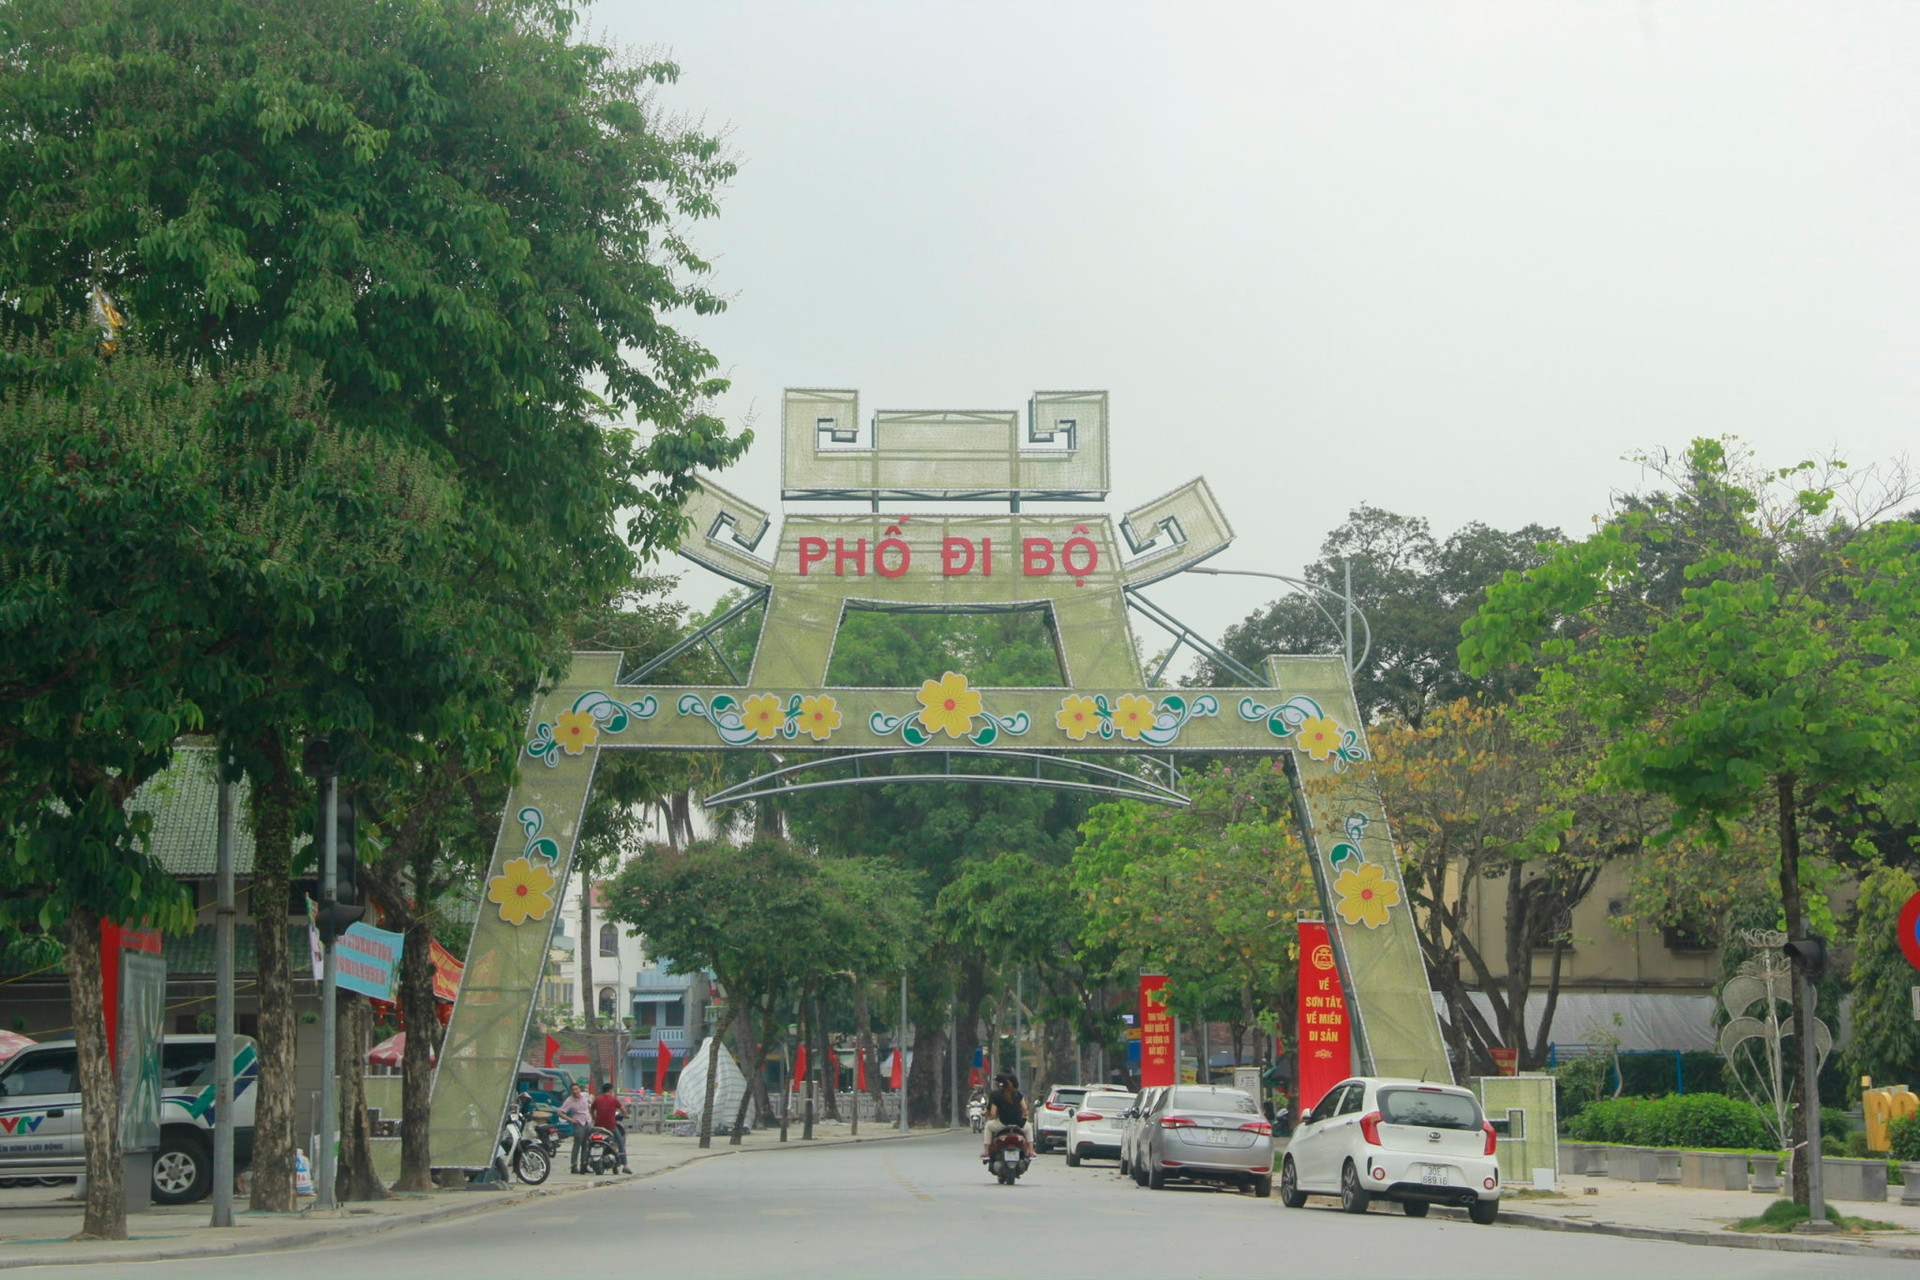 “Về Sơn Tây - Về với văn hóa xứ Đoài” Kỳ vọng tuyến phố đi bộ thứ tư của TP Hà Nội